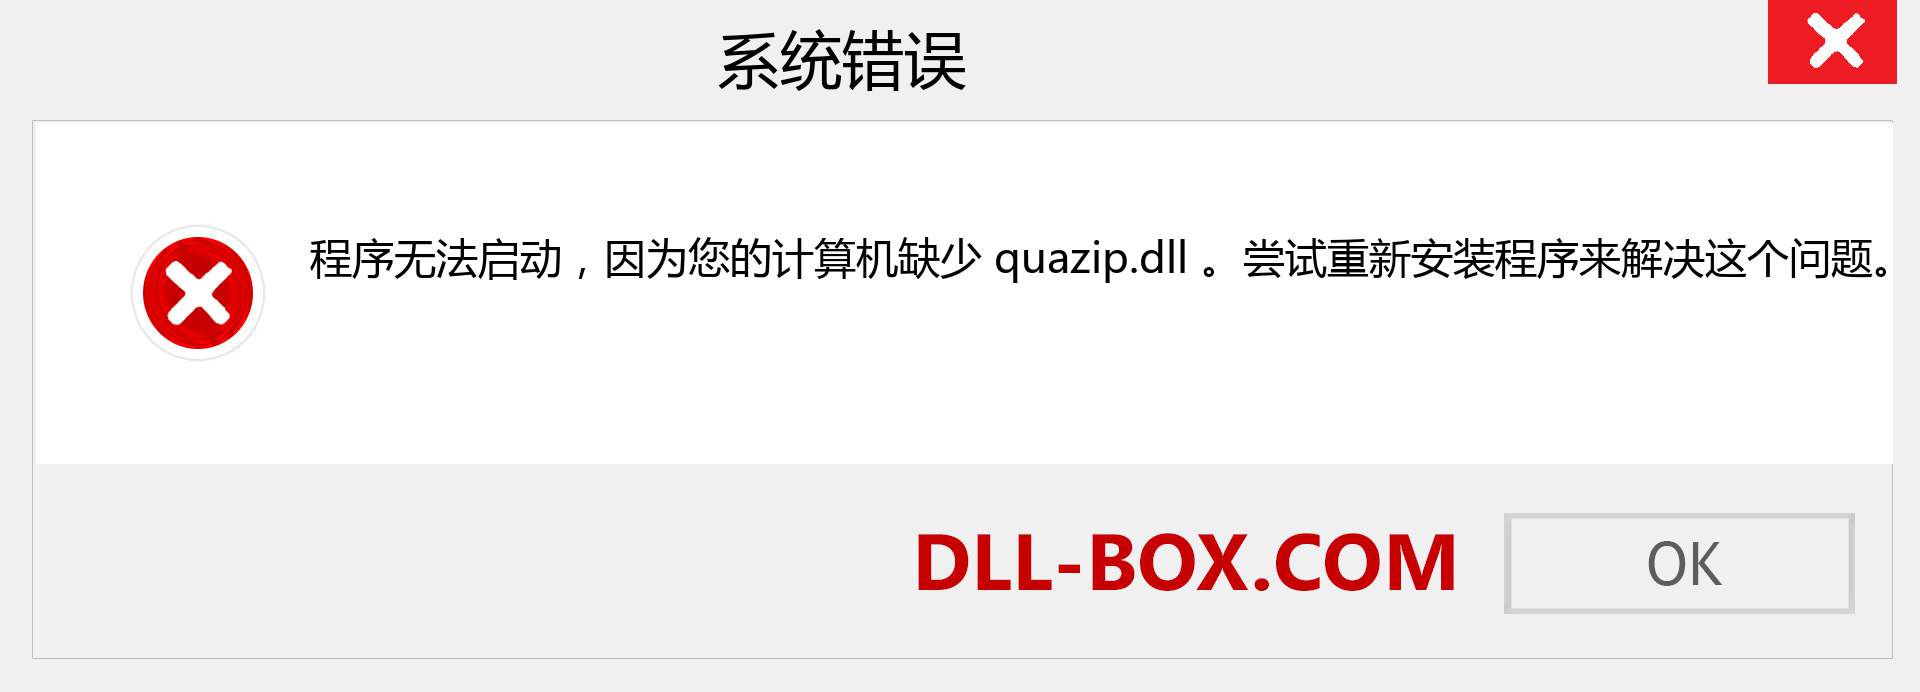 quazip.dll 文件丢失？。 适用于 Windows 7、8、10 的下载 - 修复 Windows、照片、图像上的 quazip dll 丢失错误